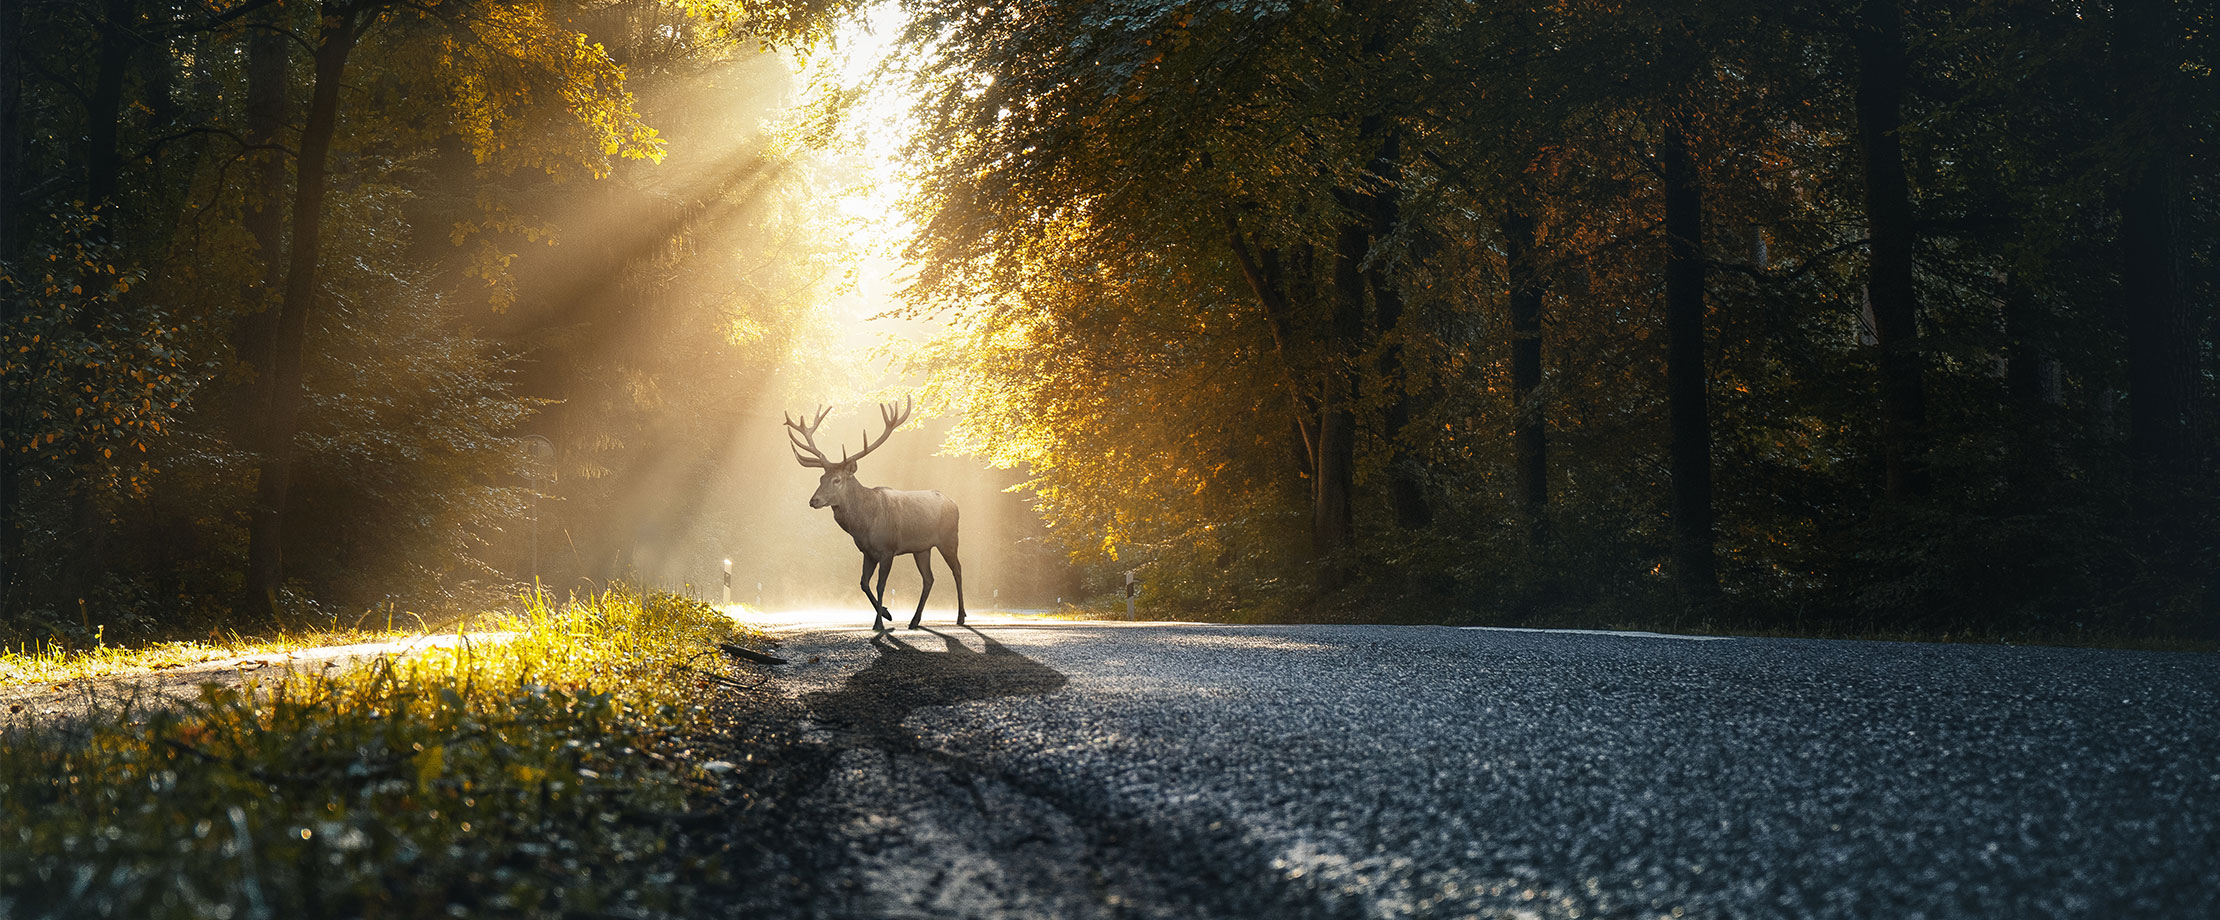 Ein Hirsch steht auf einer Straße im Wald. Ein Sonnenstrahl scheint ihm durch die Bäume auf sein Geweih.